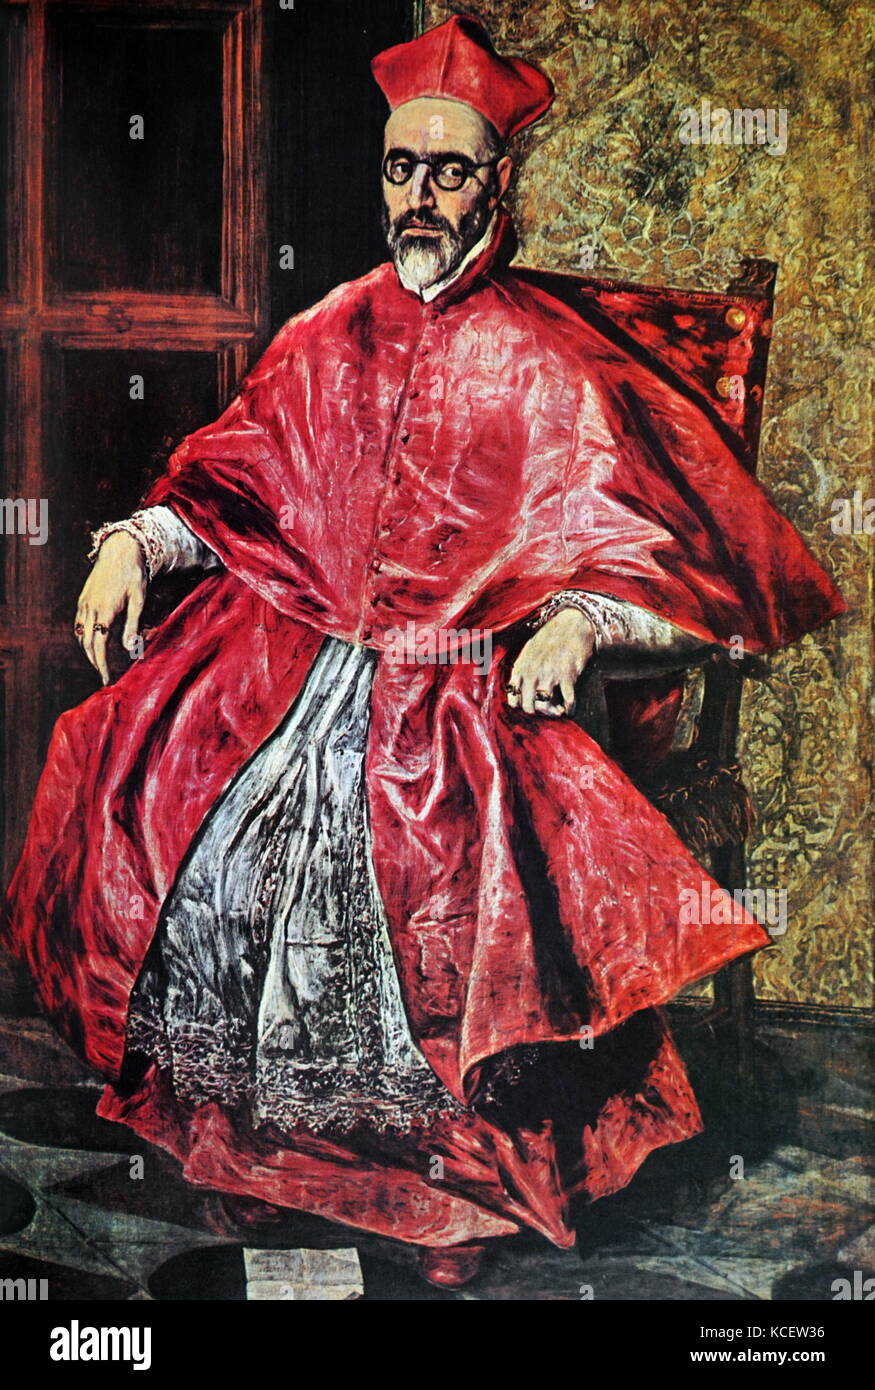 Le Cardinal Nino de Guevara en 1596, peint par El Greco (1541-1614) huile sur toile. Fernando Niño de Guevara (1541 - 1609). L'archevêque de Grenade de 1542 à 1552. Nommé Grand Inquisiteur de l'Espagne. Au cours de son mandat en tant que grand inquisiteur, l'Inquisition espagnole a brûlé 240 hérétiques, plus 96 en effigie. 1 628 autres personnes ont été trouvé coupable et soumis à des sanctions moins lourdes. Banque D'Images